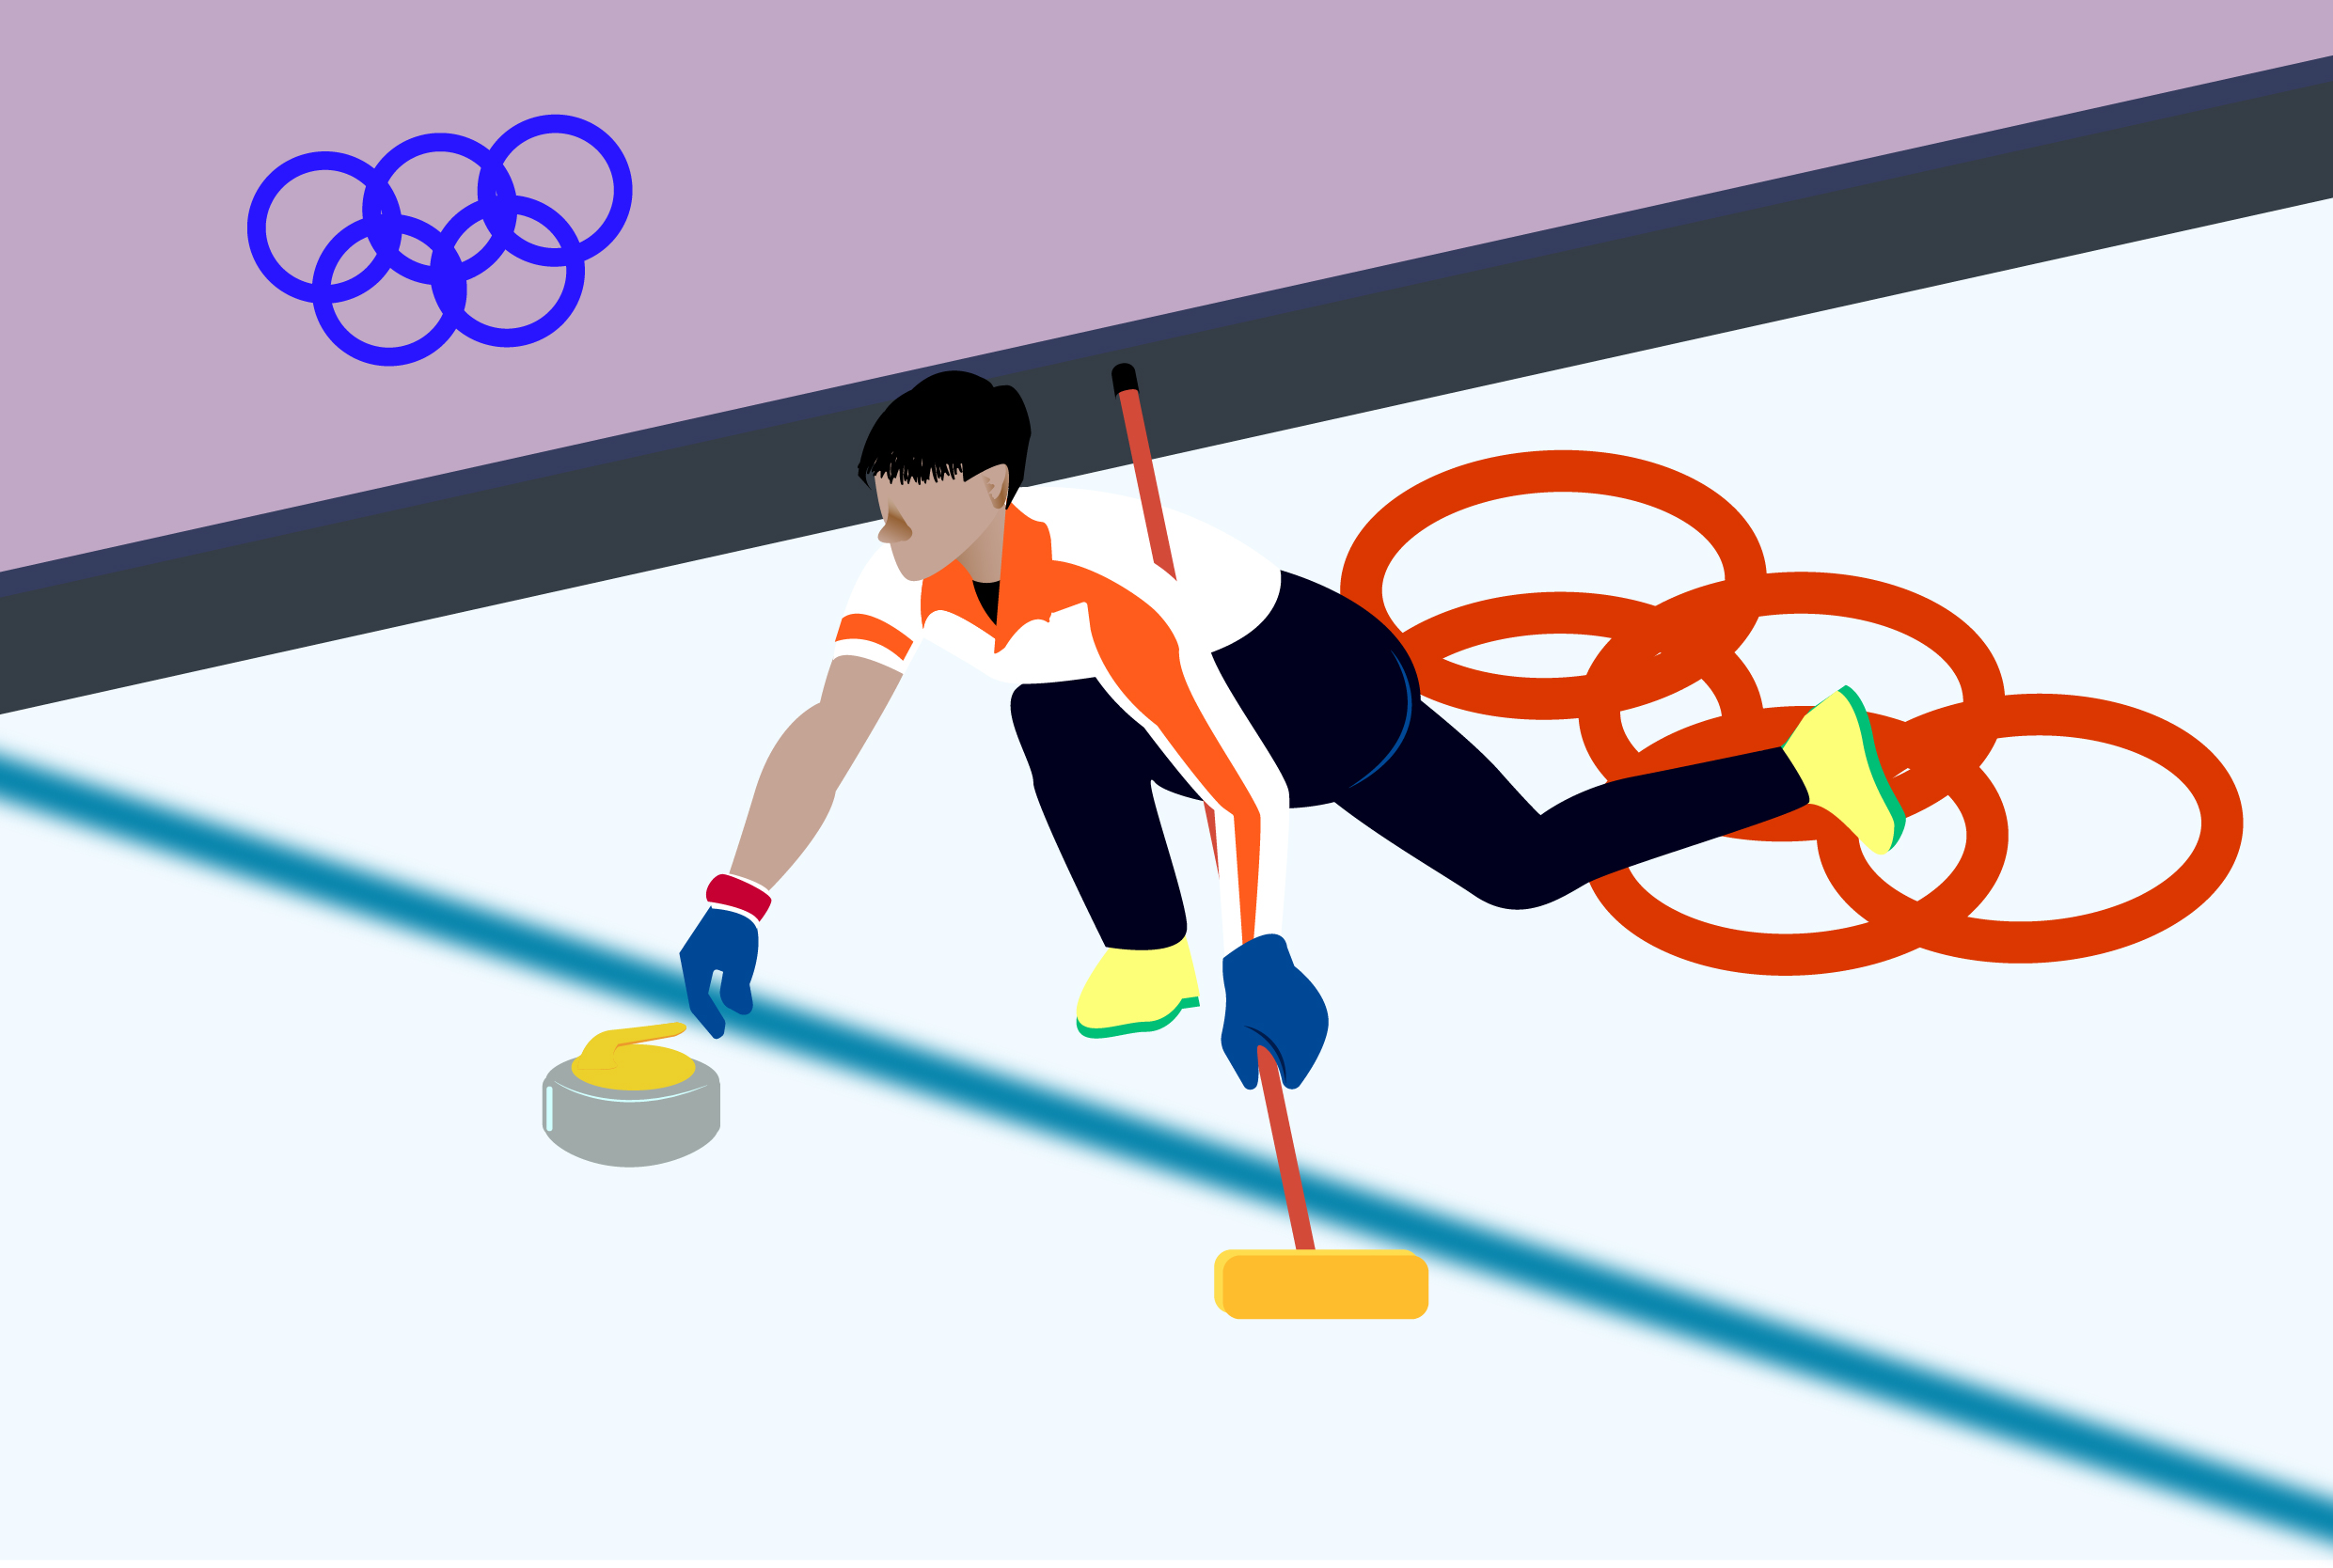 2022冬奥会冰壶图画图片